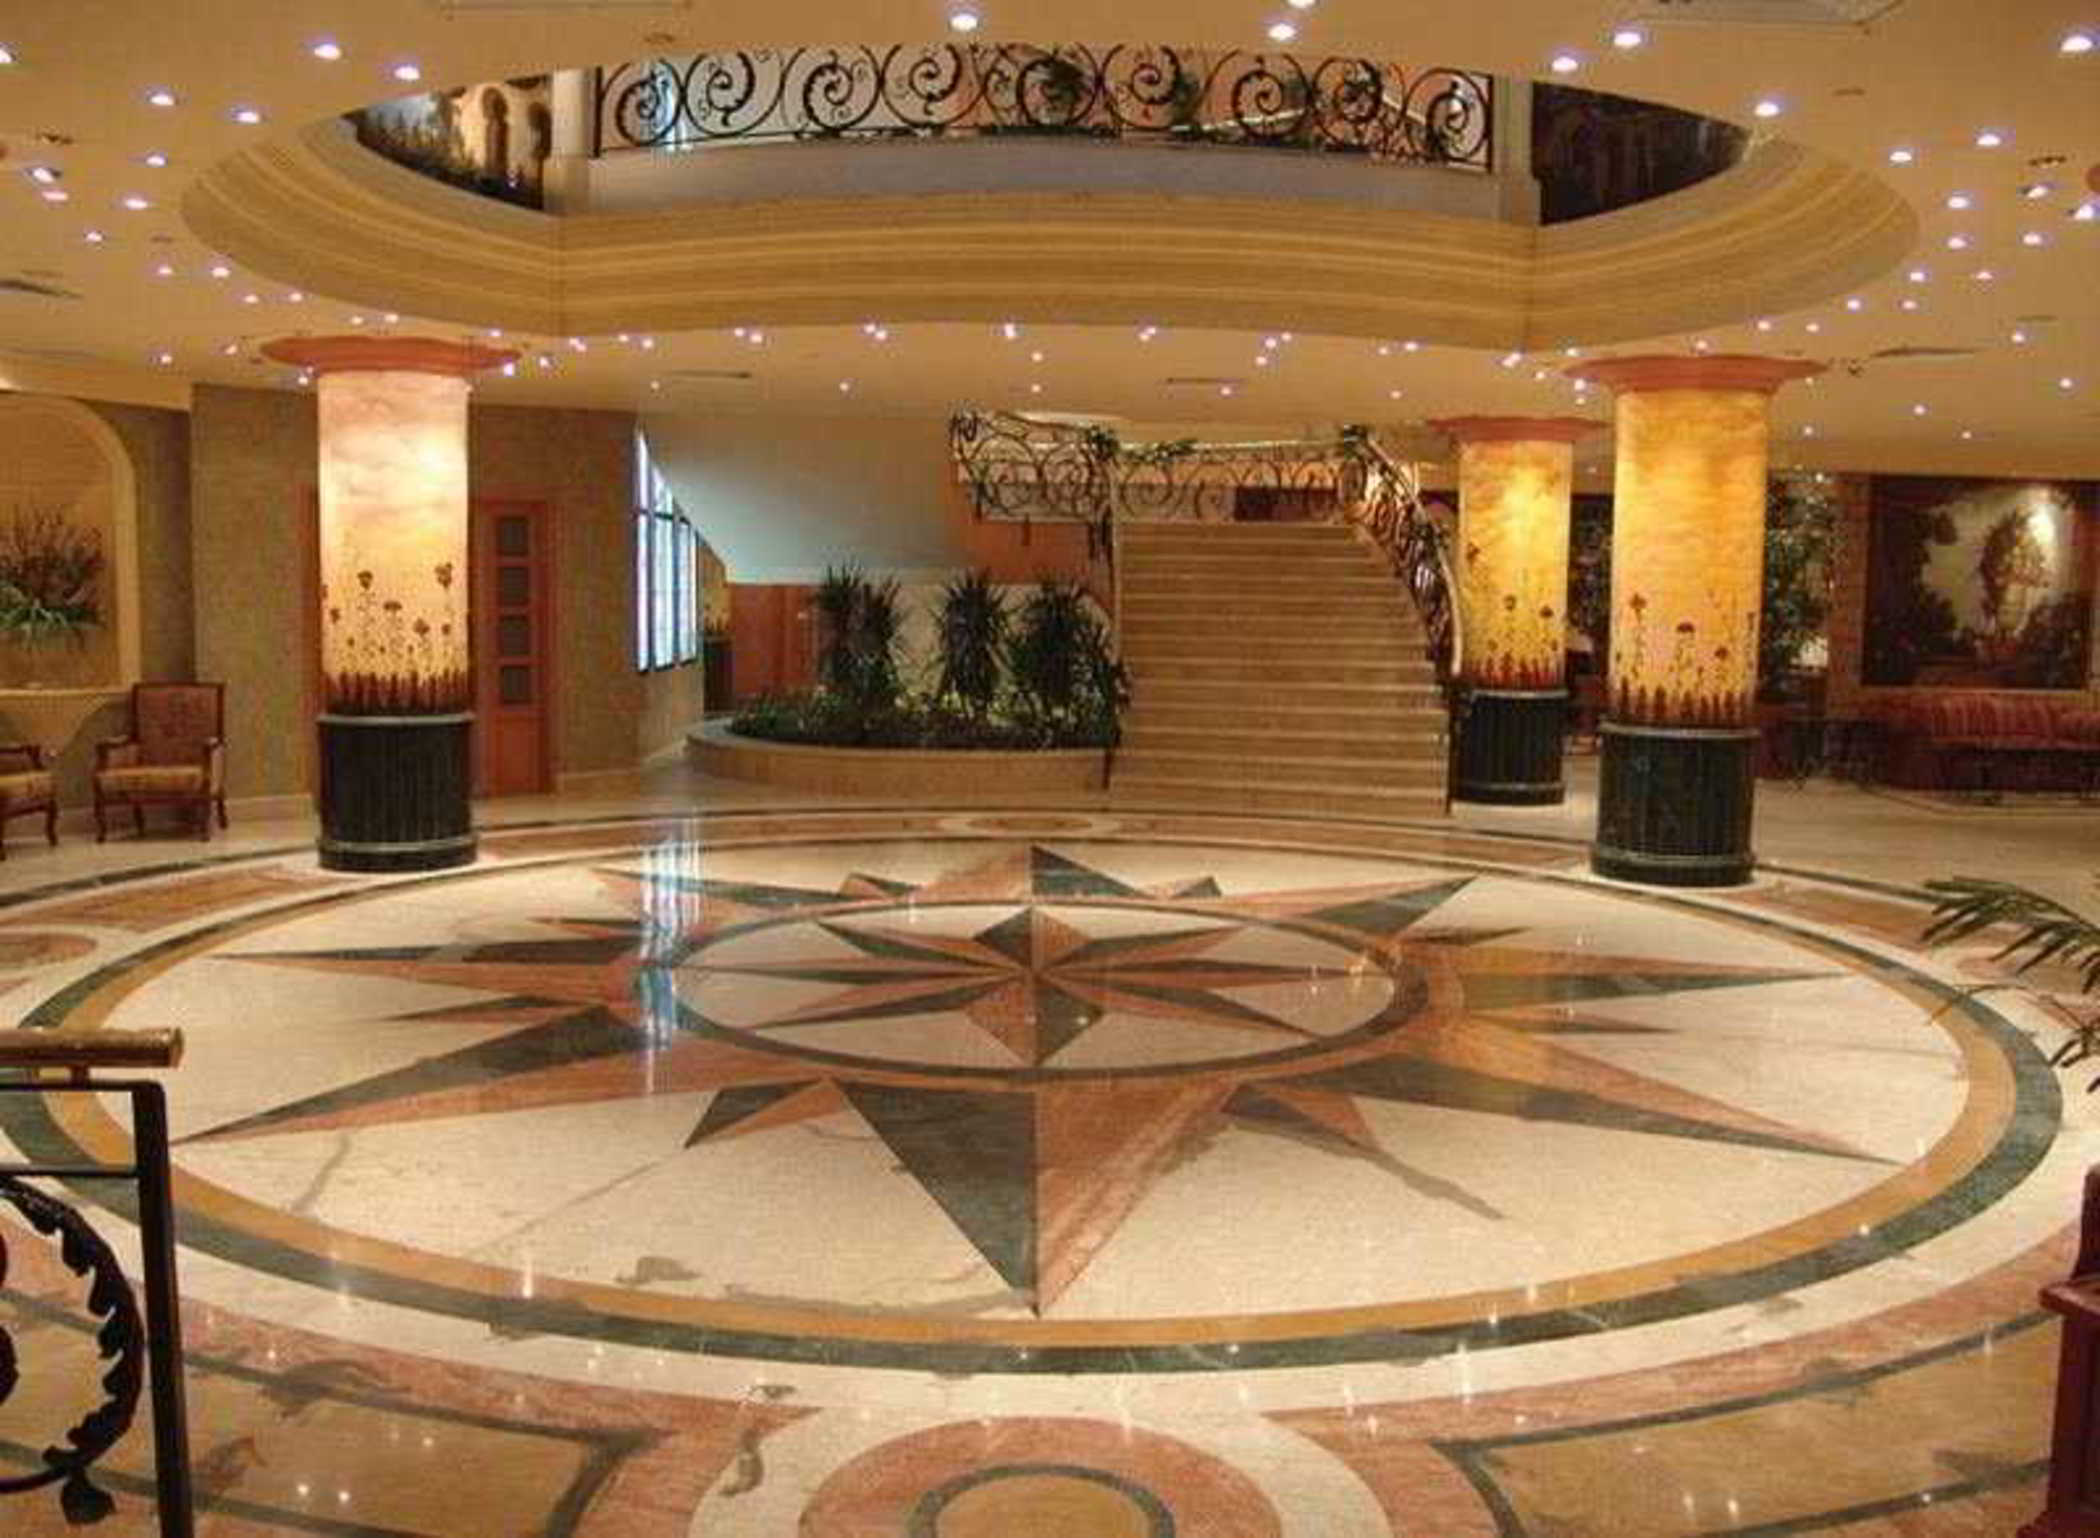 Pyramisa Suites Hotel & Casino